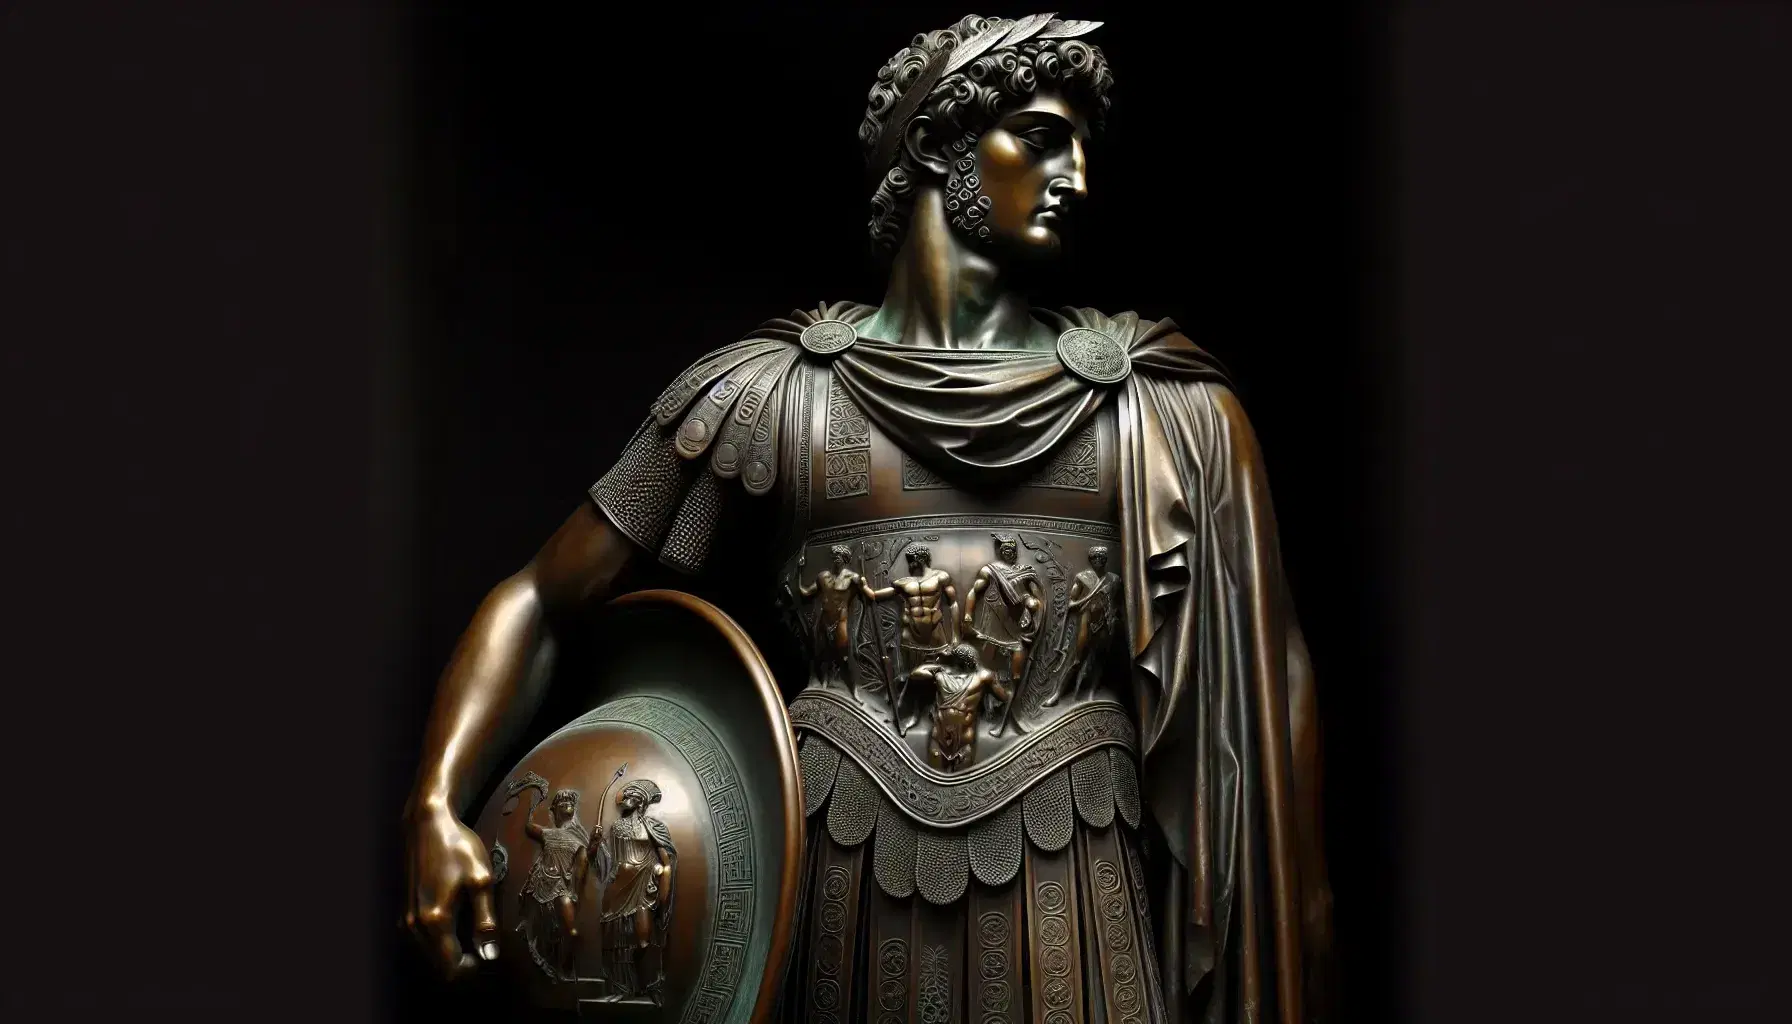 Statua in bronzo di guerriero con armatura, elmo macedone e scudo, in posa autoritaria su piedistallo di pietra.